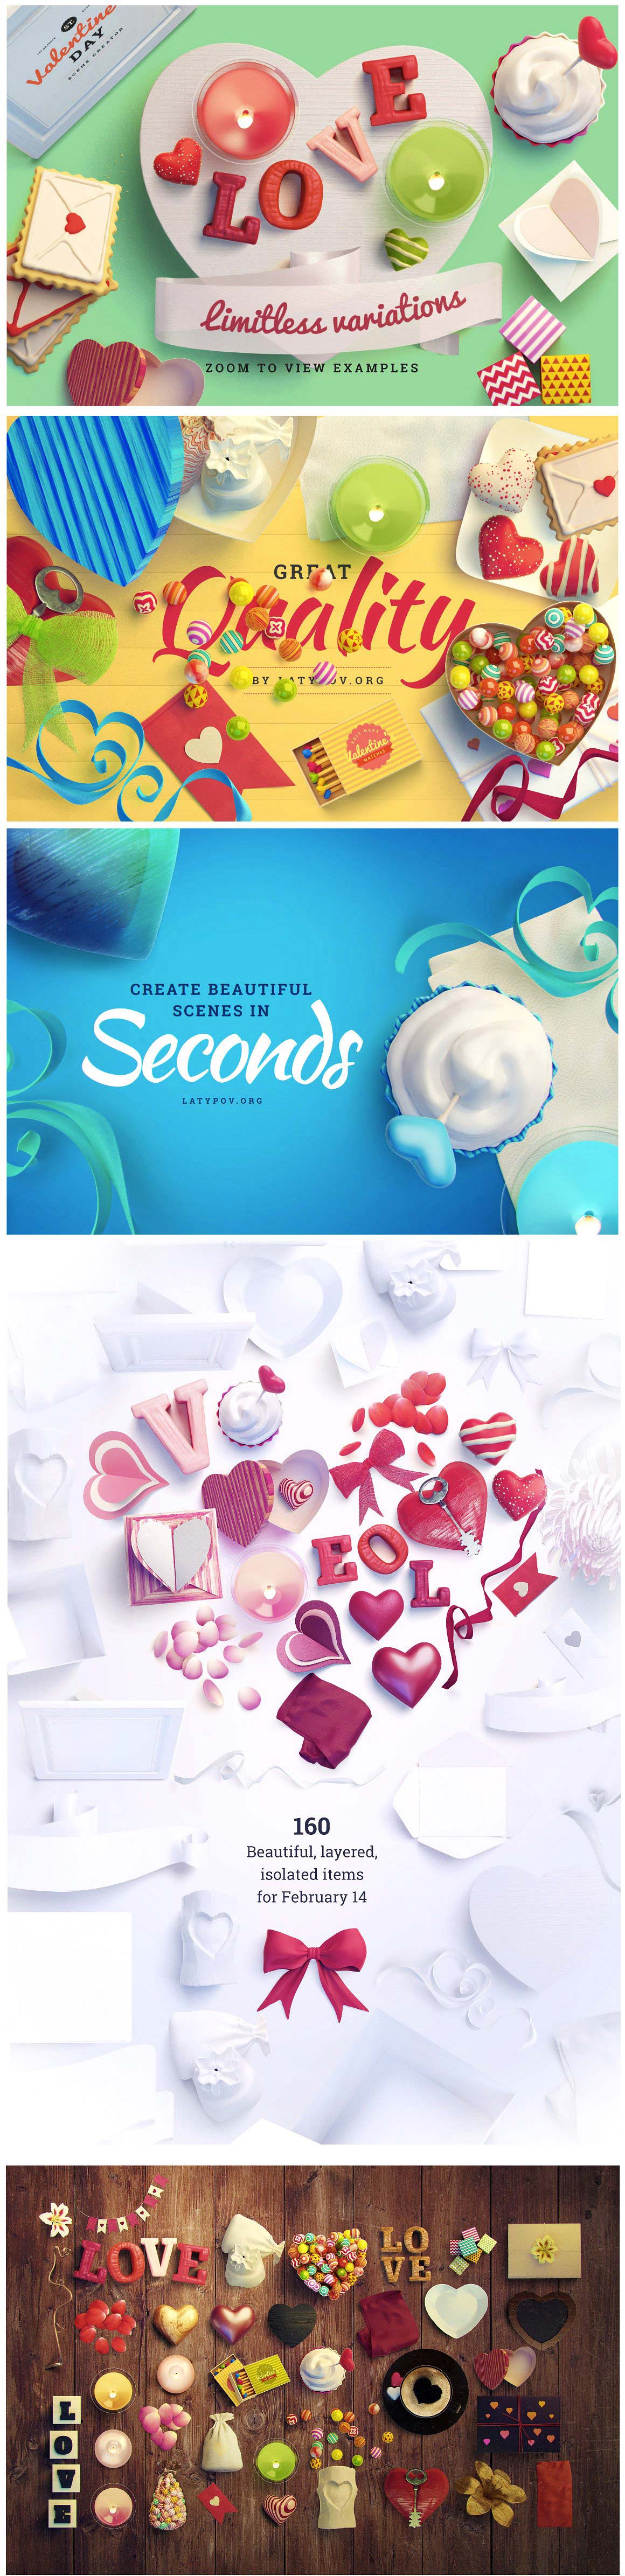 可爱的甜美食品场景设计素材大礼包下载(PSD,1.2GB)